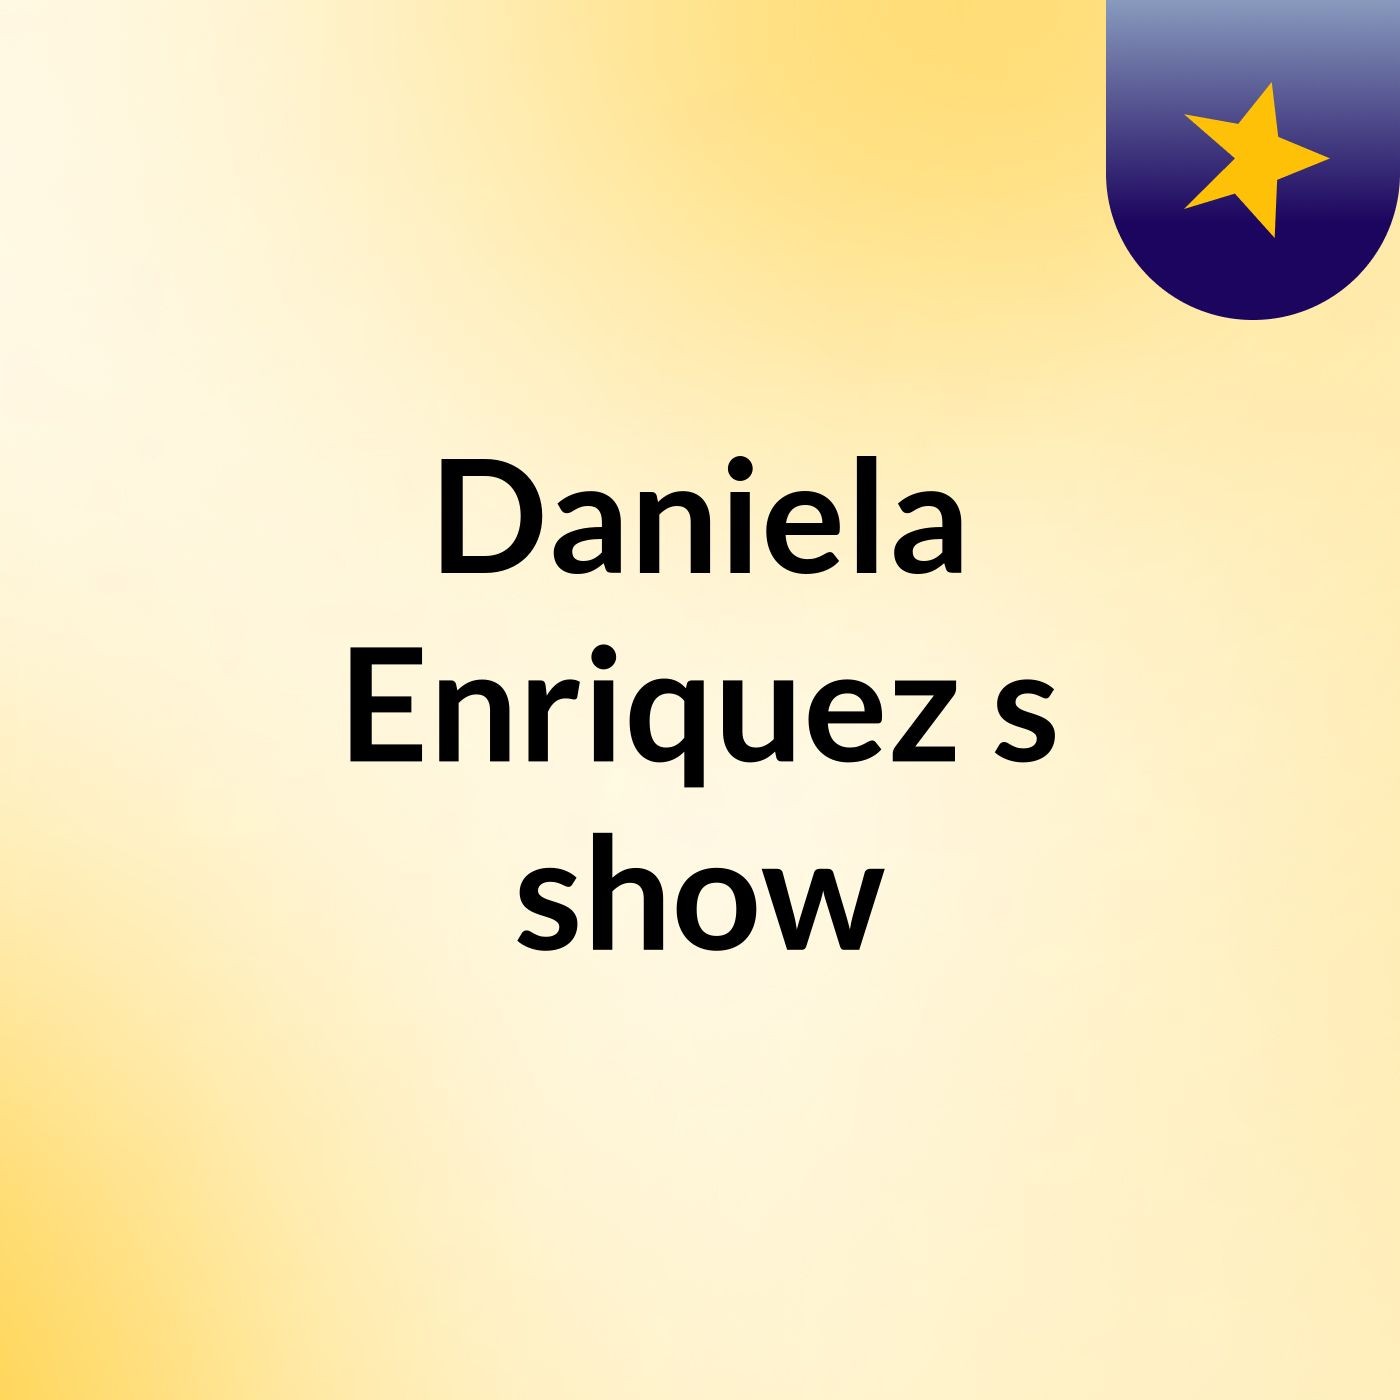 Daniela Enriquez's show